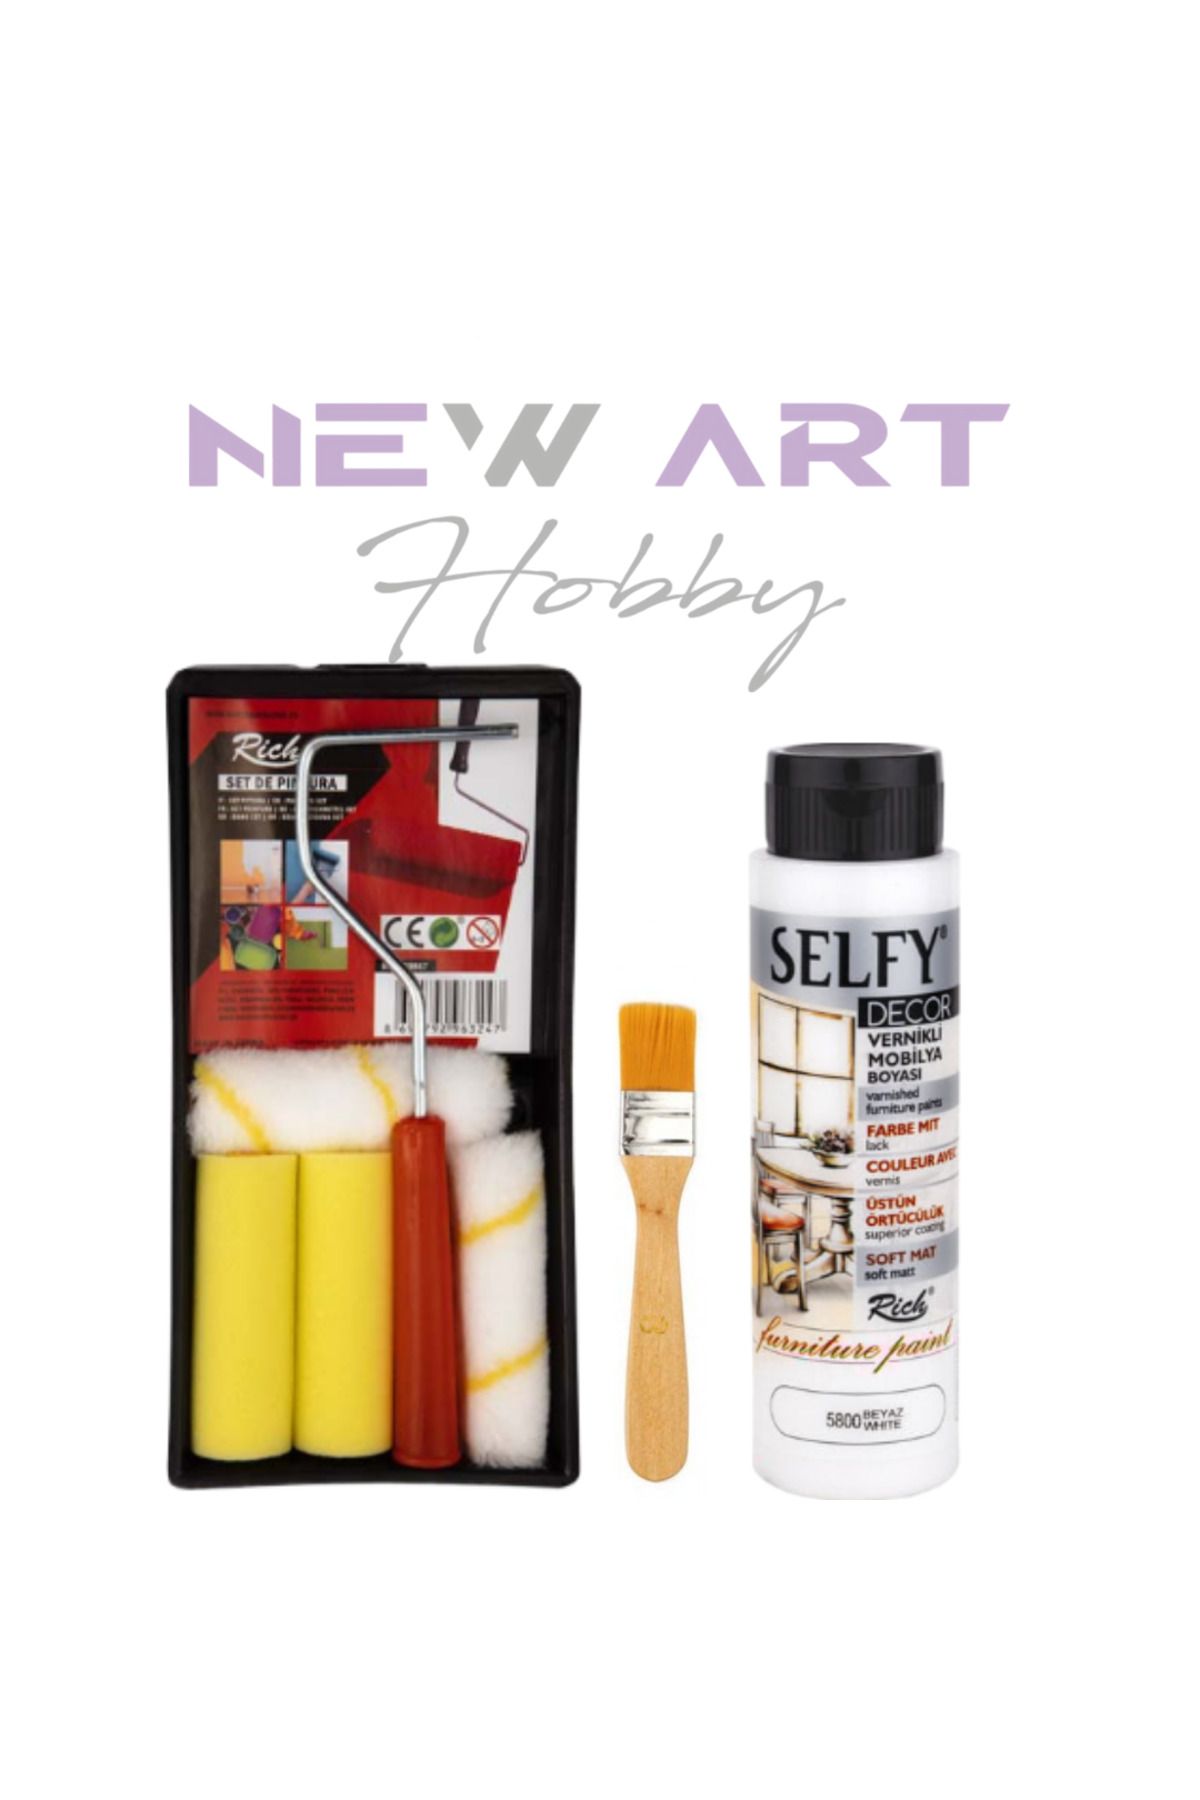 New Art Hobby Selfy Decor Kendinden Vernikli Mobilya Boyama Seti 500 Cc Beyaz + Tavalı Rulo Set + Fırça